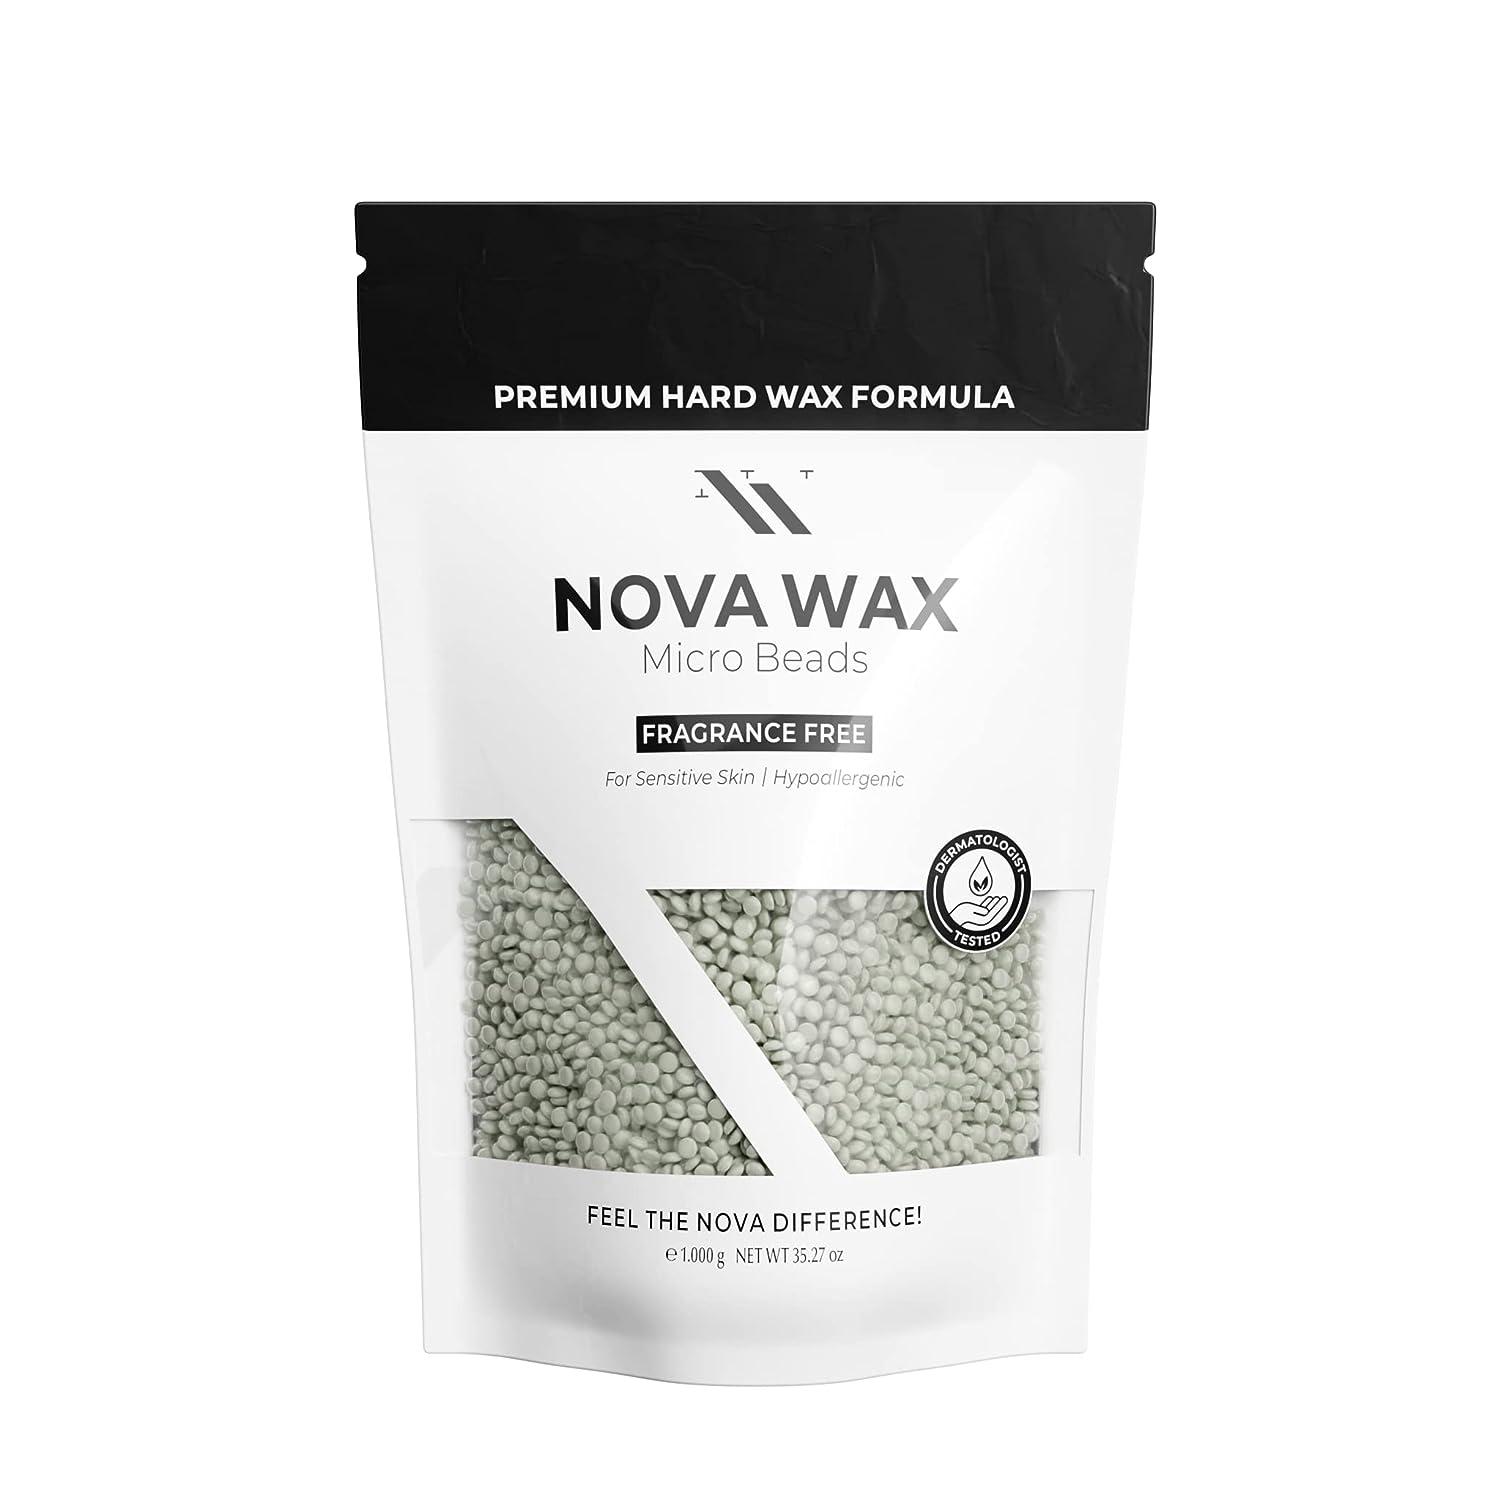 How to Clean Your Hard Wax Warmer - Nova Wax